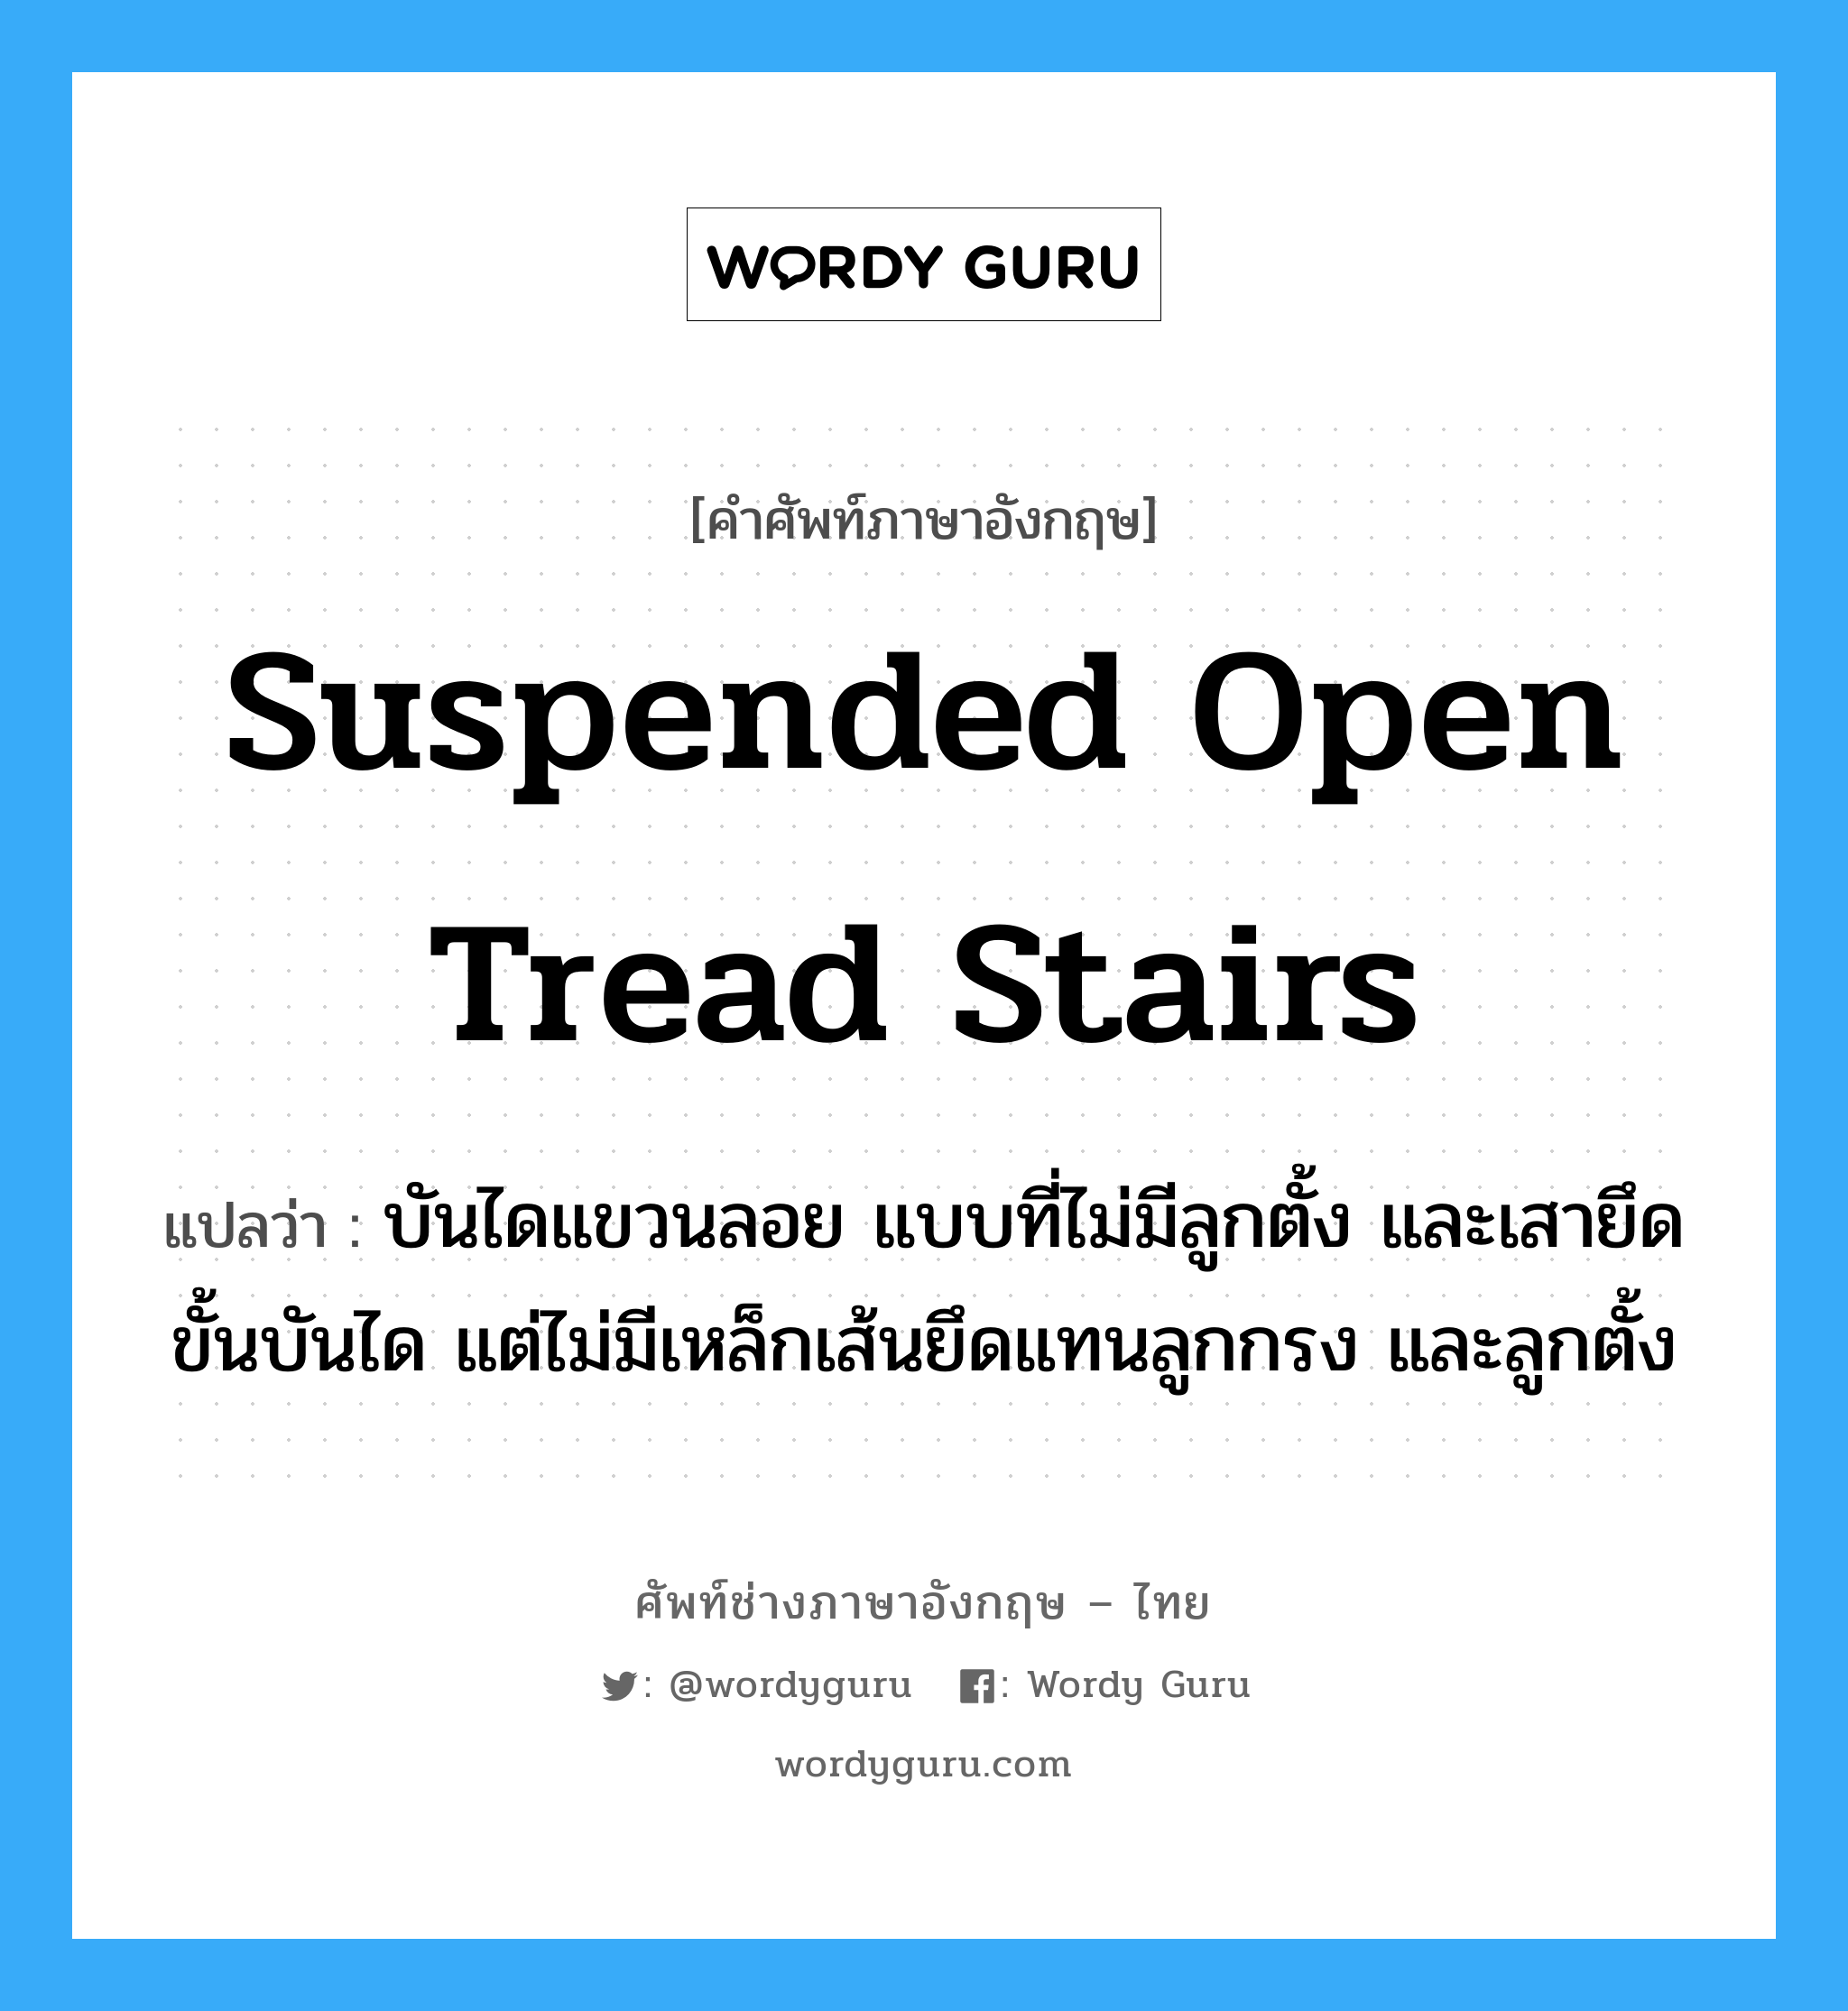 suspended open tread stairs แปลว่า?, คำศัพท์ช่างภาษาอังกฤษ - ไทย suspended open tread stairs คำศัพท์ภาษาอังกฤษ suspended open tread stairs แปลว่า บันไดแขวนลอย แบบที่ไม่มีลูกตั้ง และเสายึดขั้นบันได แต่ไม่มีเหล็กเส้นยึดแทนลูกกรง และลูกตั้ง